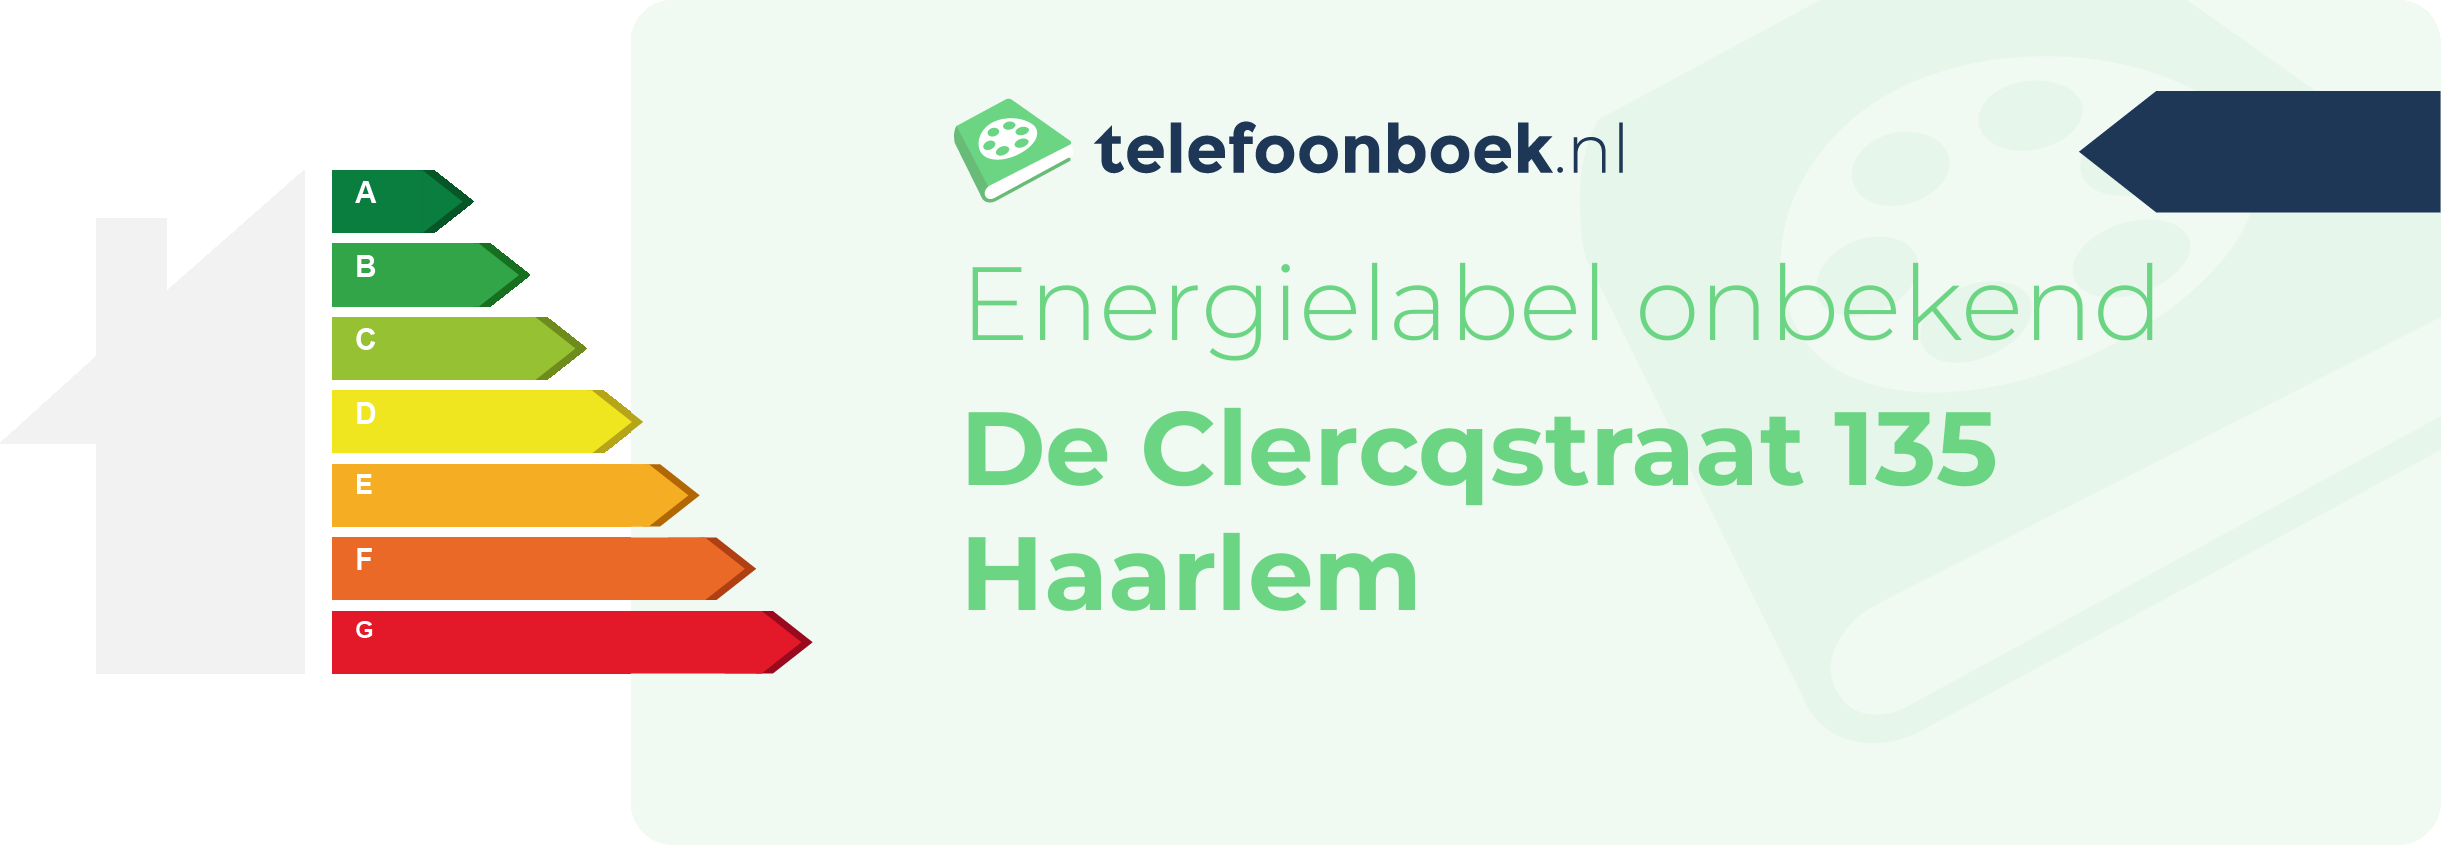 Energielabel De Clercqstraat 135 Haarlem